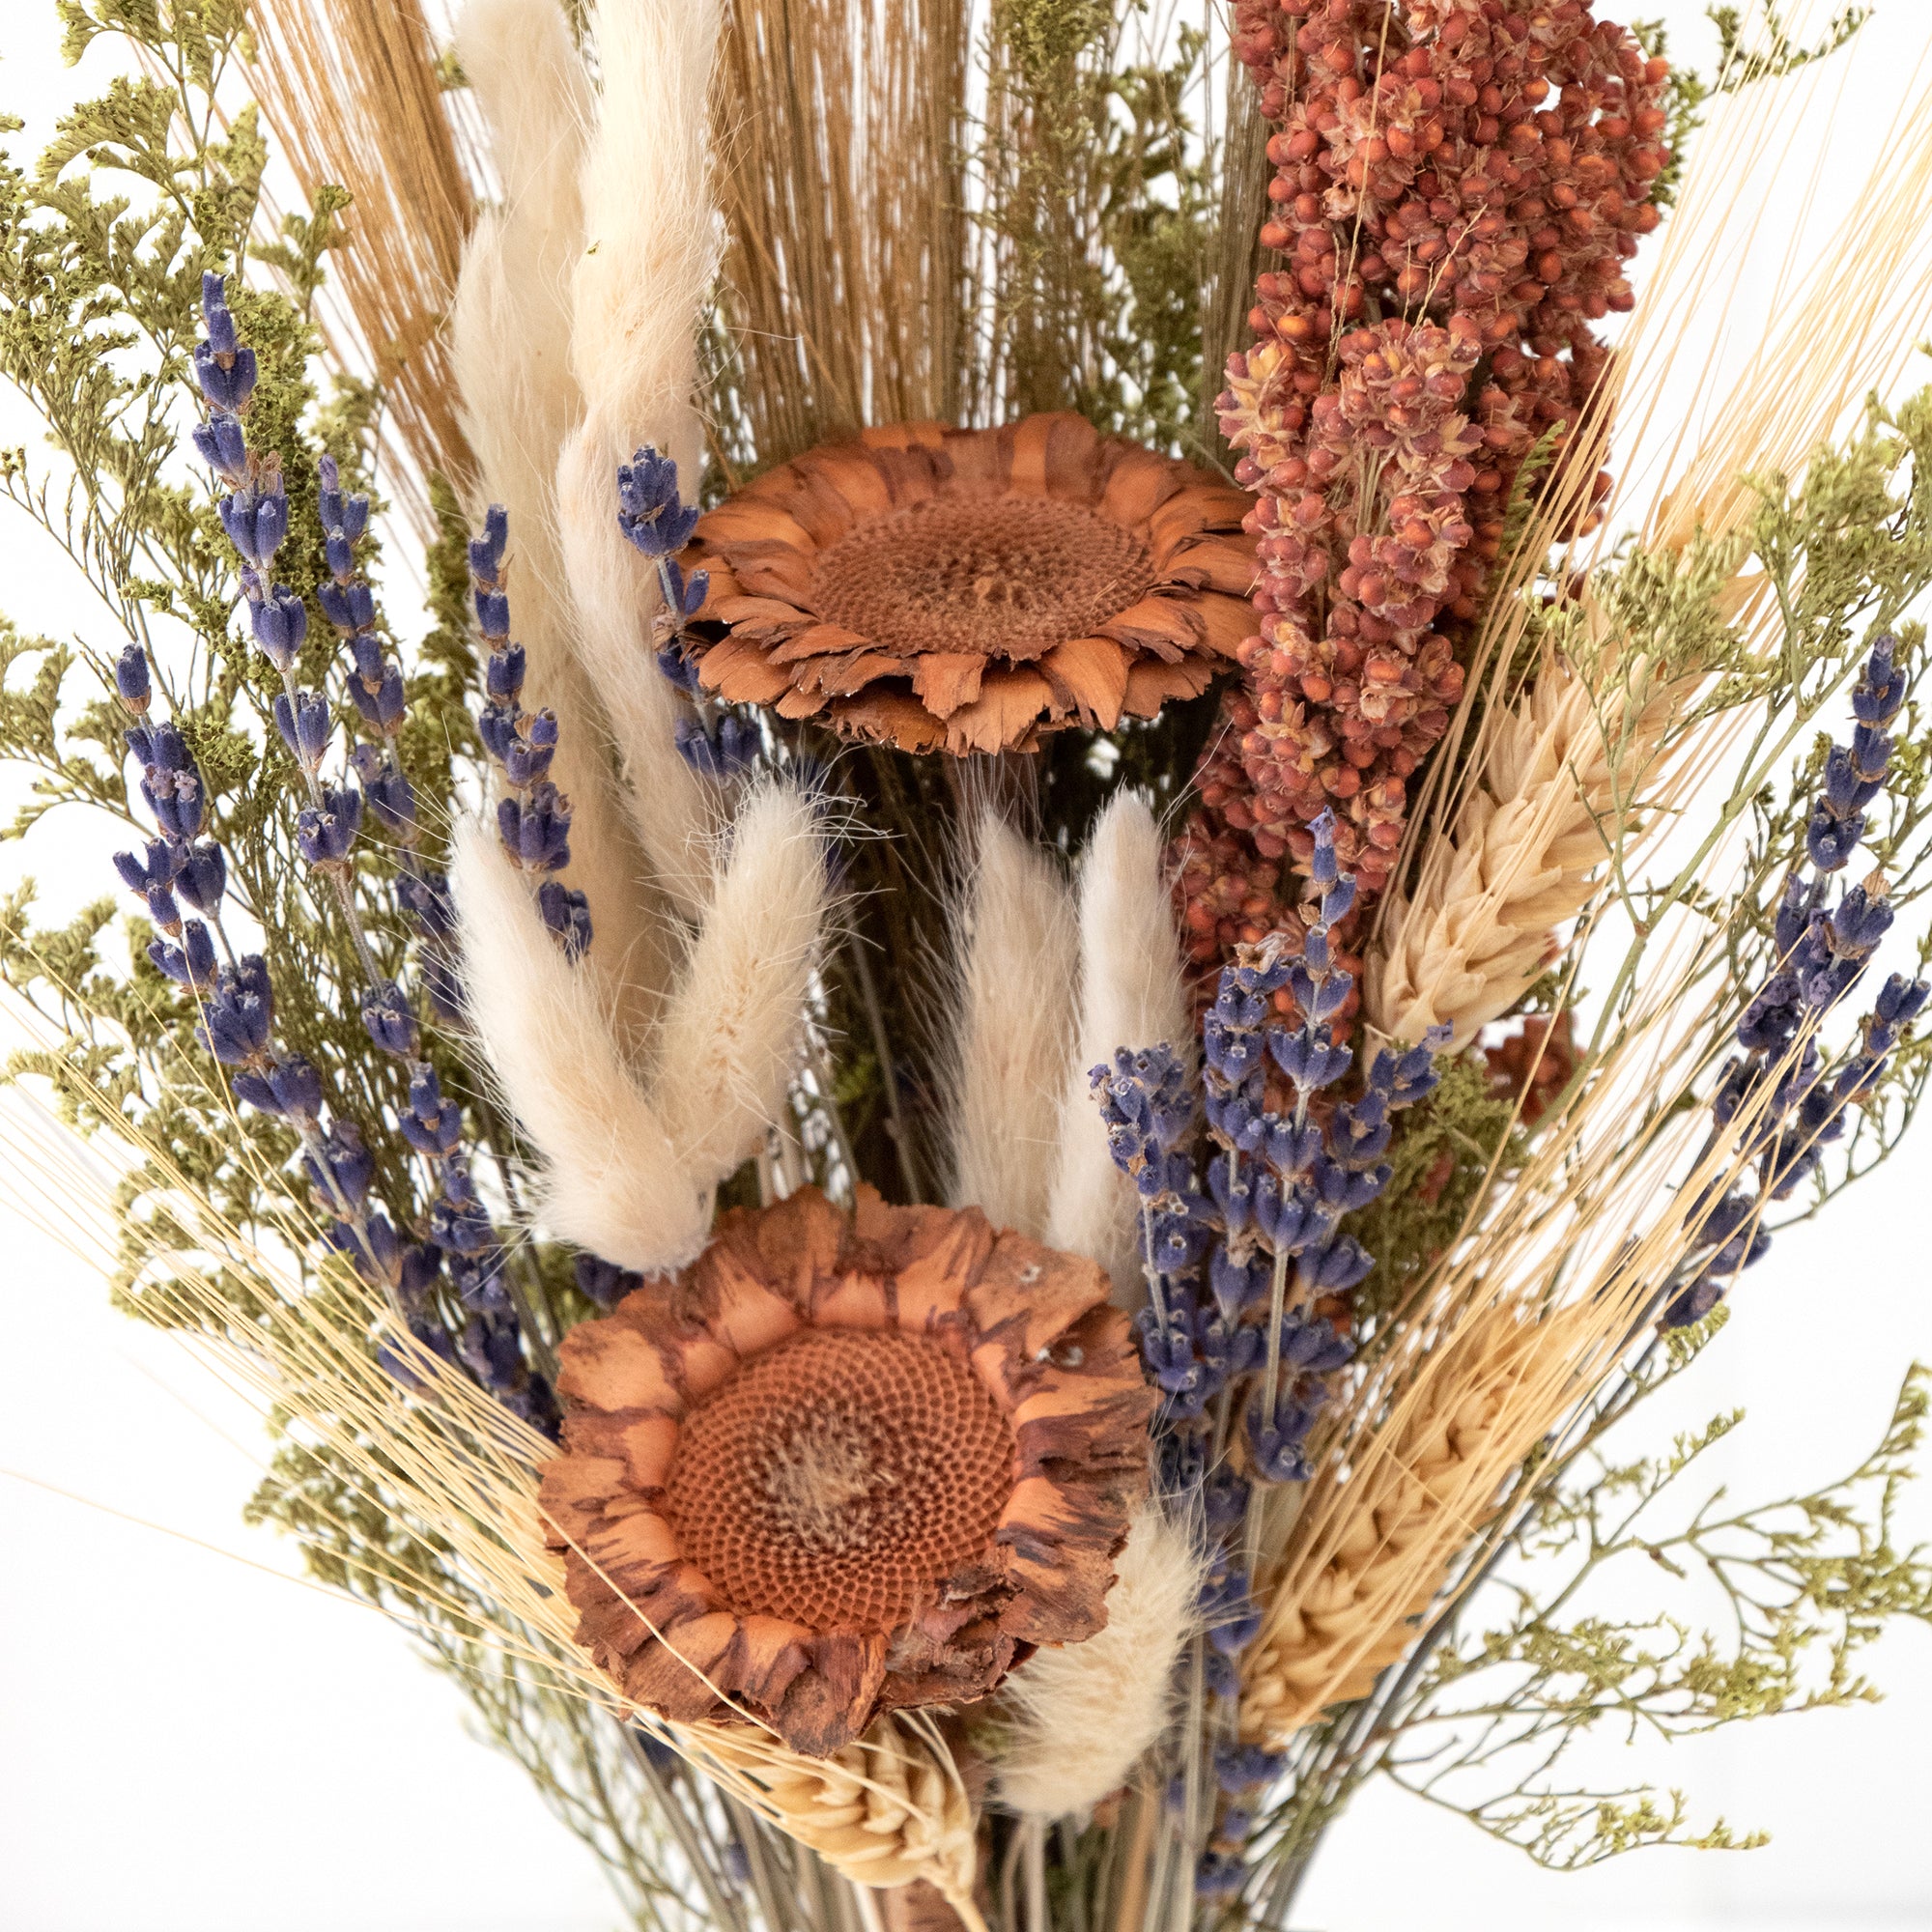 Lavender & Grains Rustic Bouquet